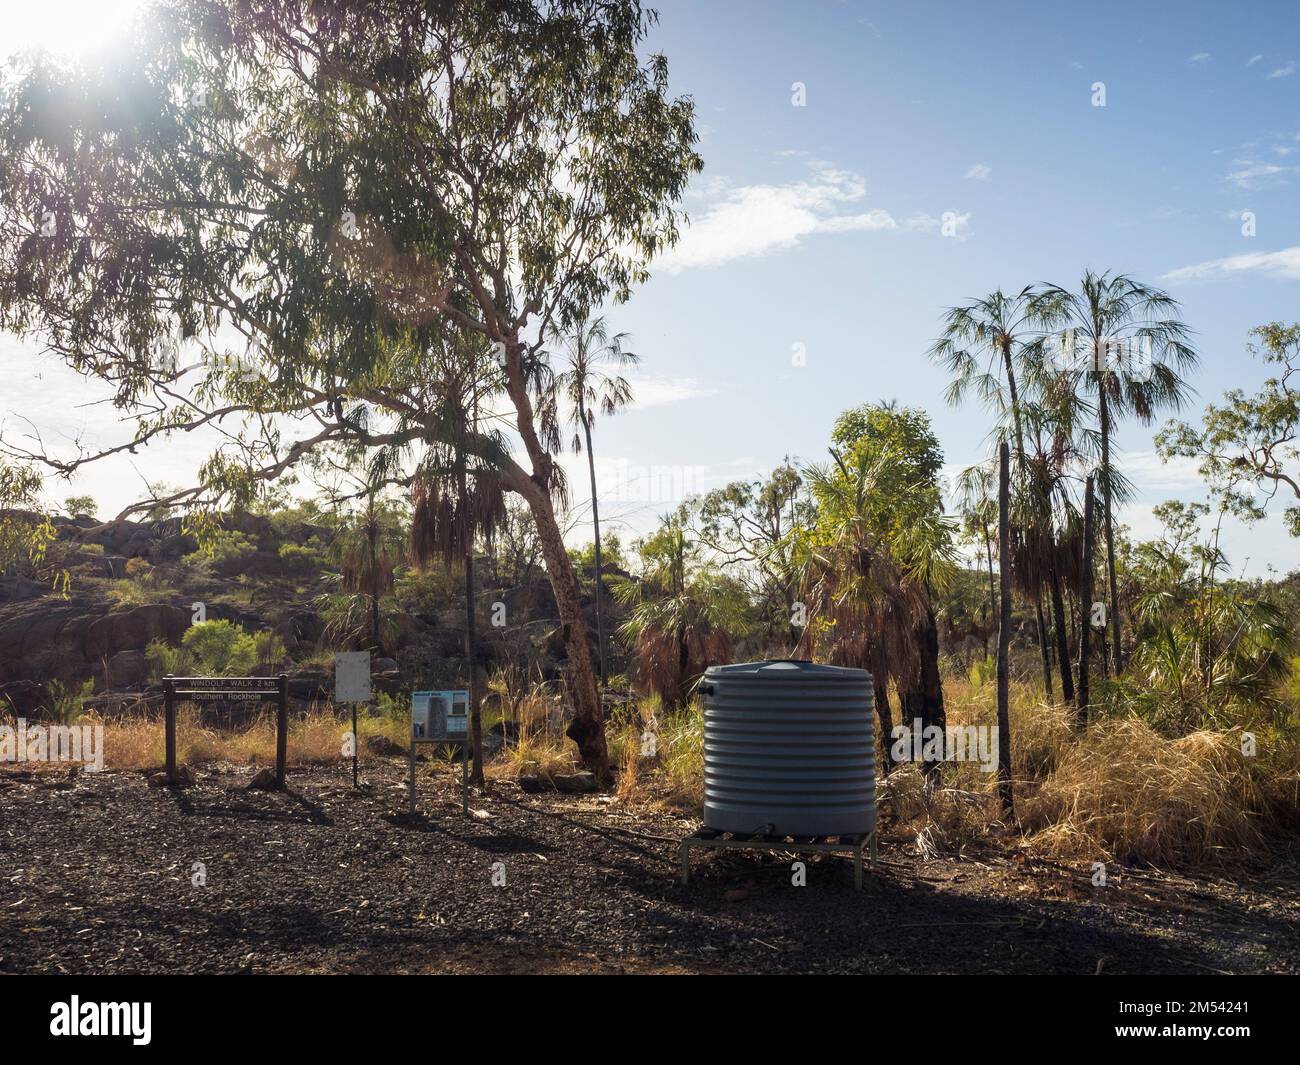 Jonction de piste et réservoir d'eau, promenades du Sud, Katherine gorge, parc national de Nitmiluk, territoire du Nord, Australie Banque D'Images